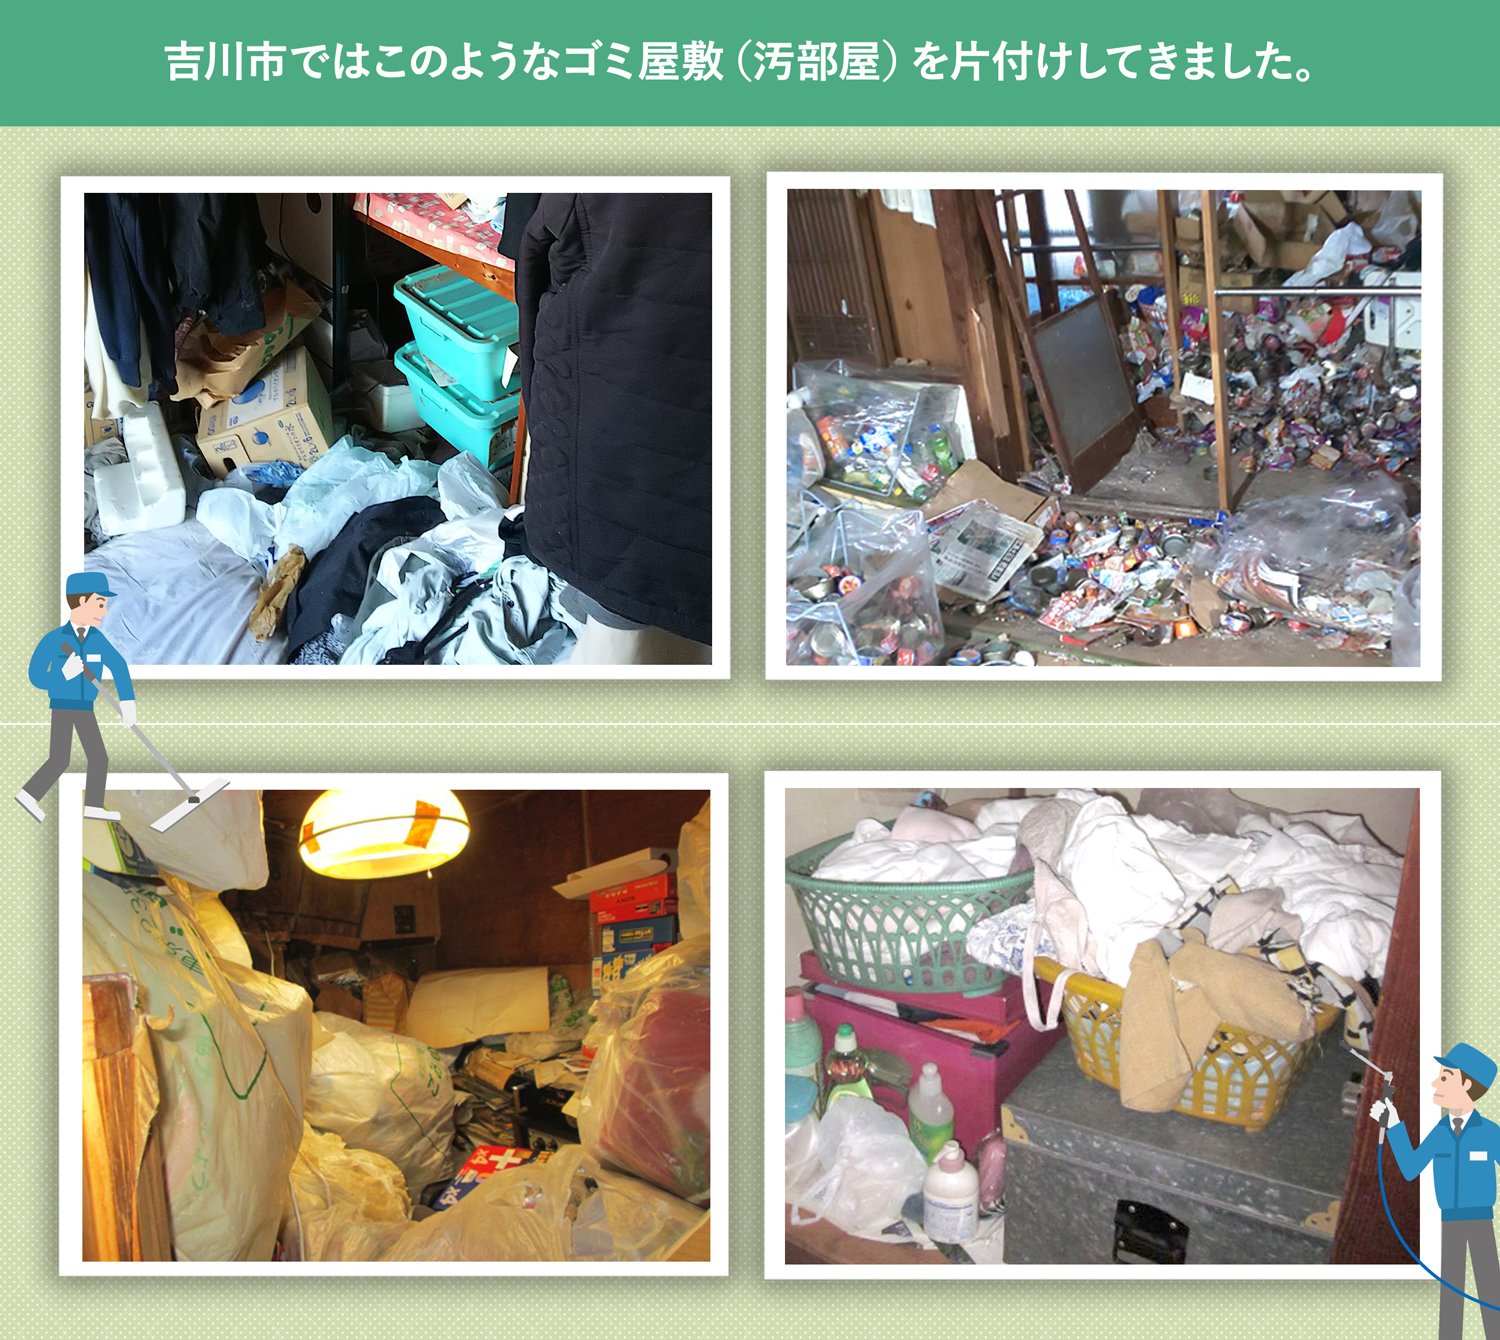 吉川市で行ったで行ったごみ屋敷・汚部屋の片付けの一例